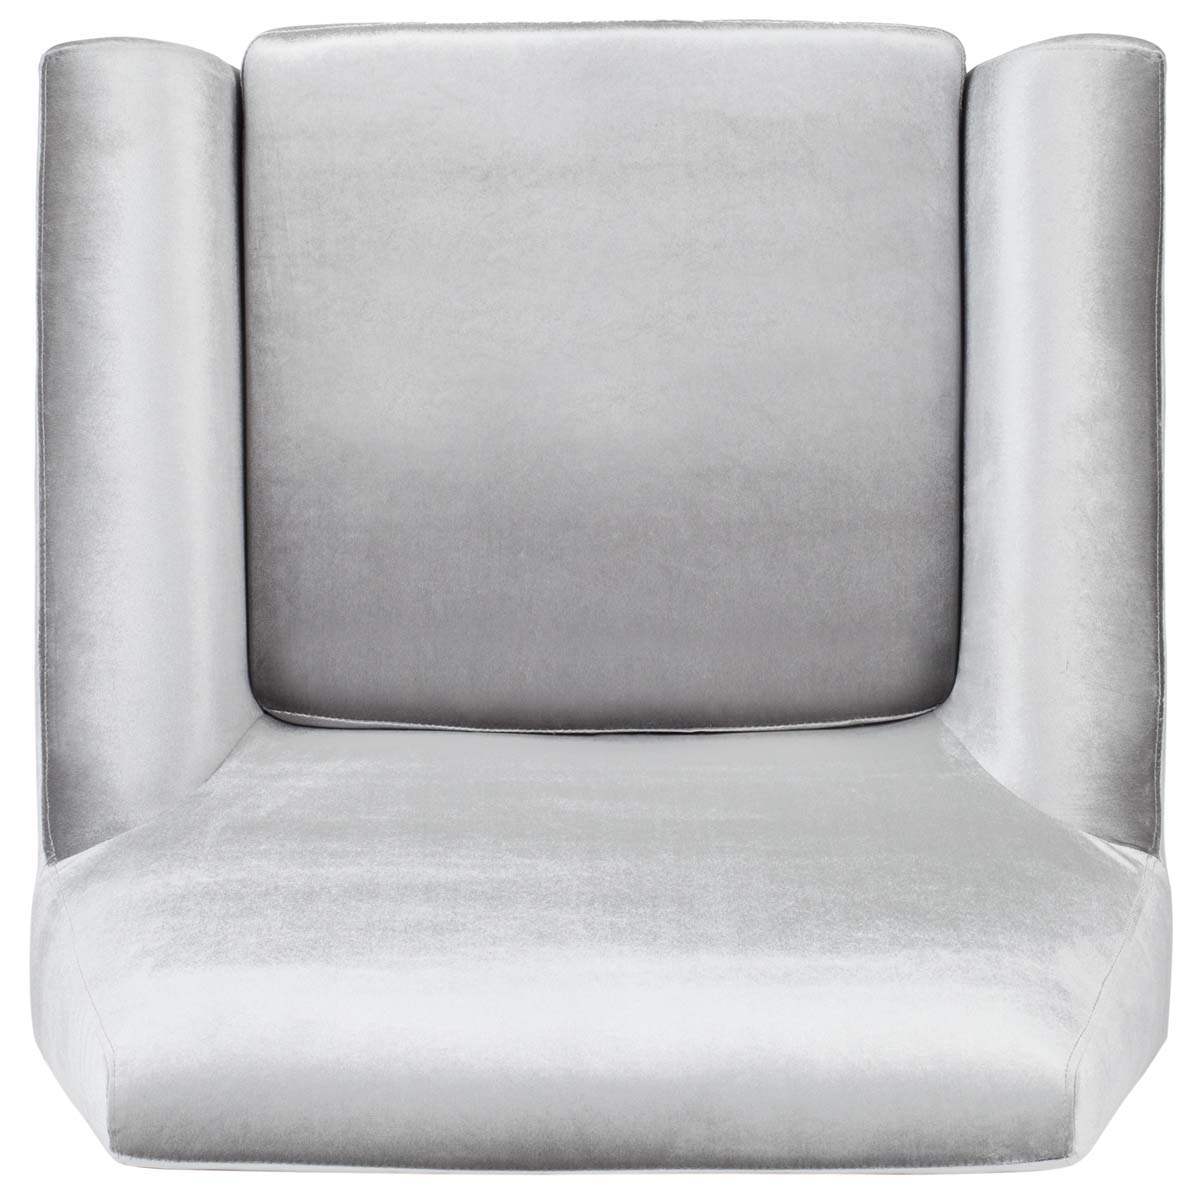 Safavieh Nynette Velvet Retro Mid Century Accent Chair , FOX6270 - Light Grey Velvet